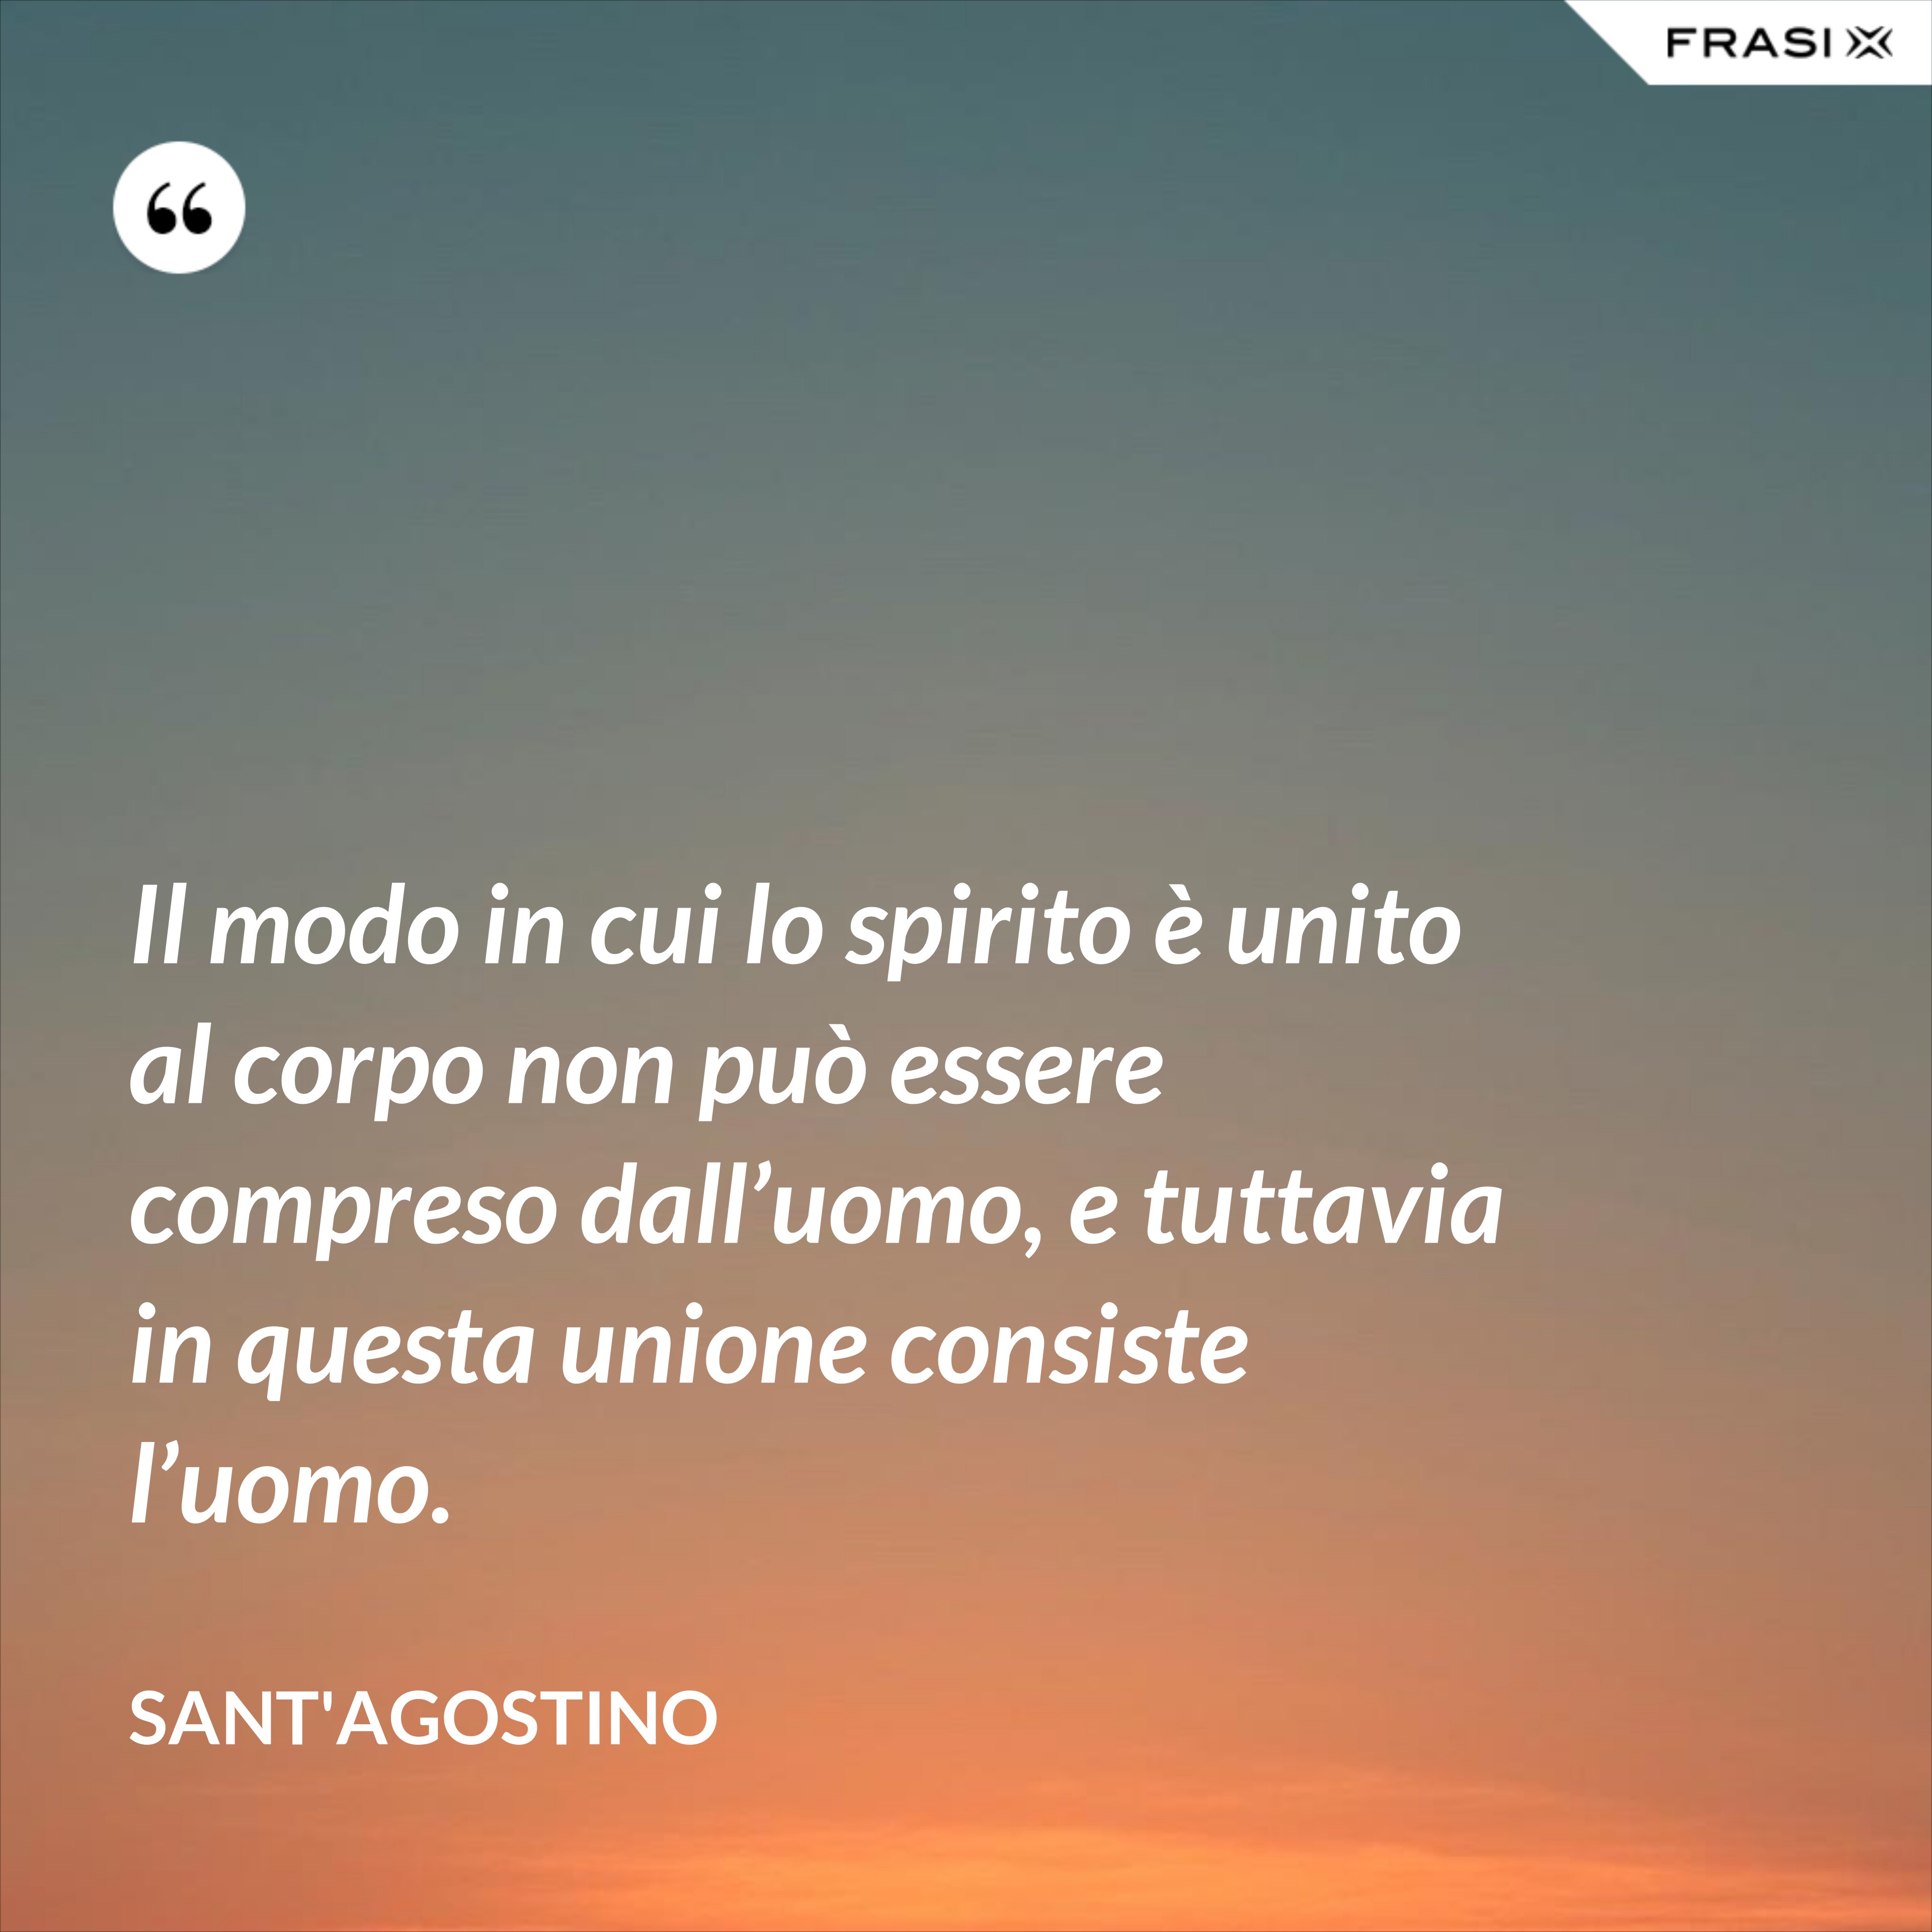 Il modo in cui lo spirito è unito al corpo non può essere compreso dall’uomo, e tuttavia in questa unione consiste l’uomo. - Sant'Agostino